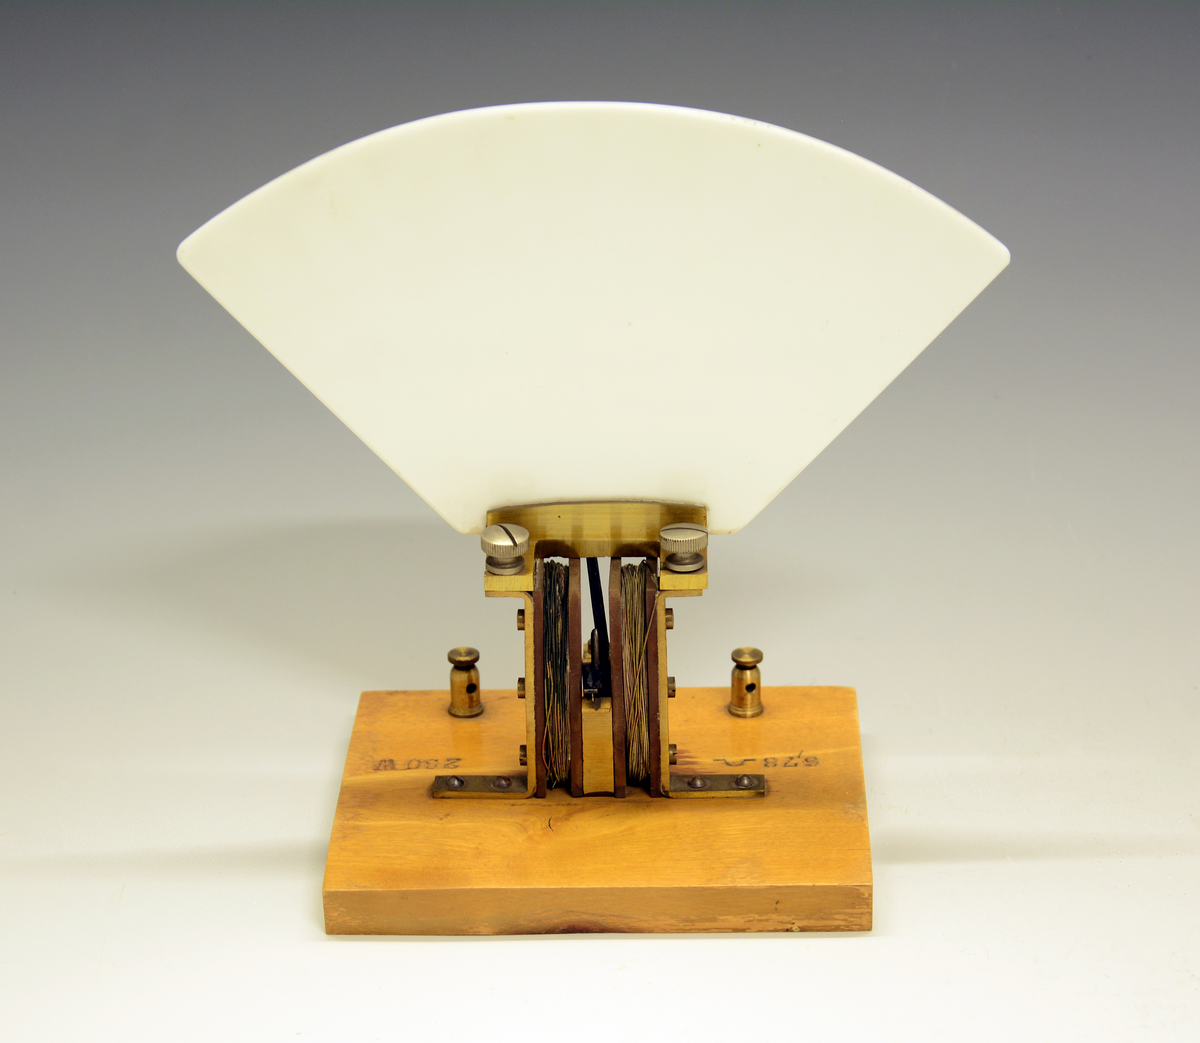 Dreiespoleinstrument, amperemeter. Skala av hvit bakelitt 3-0-3 spoler, montert på treplate.